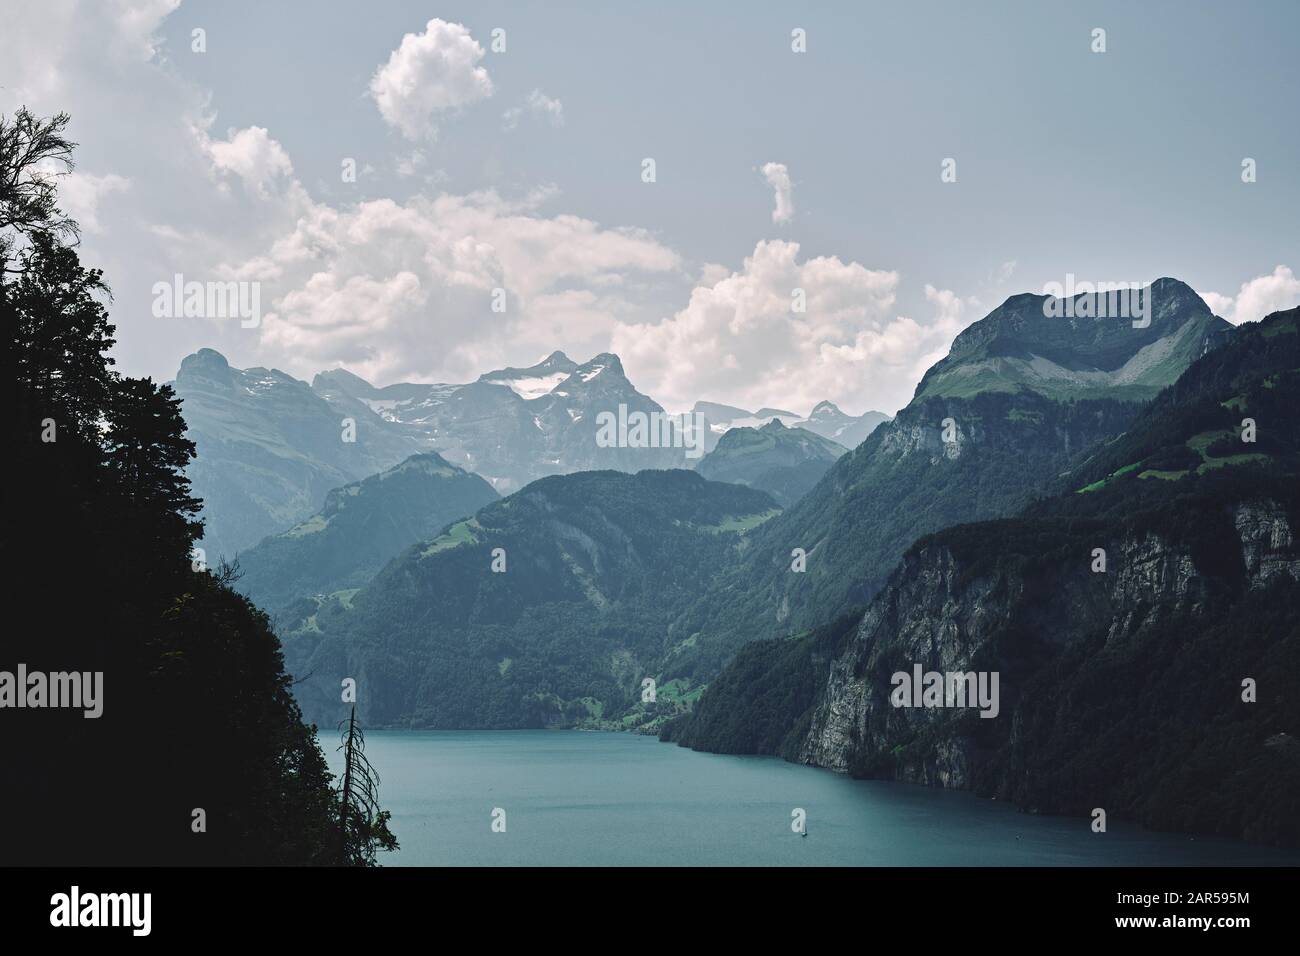 Un lago de los Alpes suizos y paisaje de montaña paisaje veraniego del lago Lucerna, cerca de Brunnen, Schwyz, Suiza UE Foto de stock